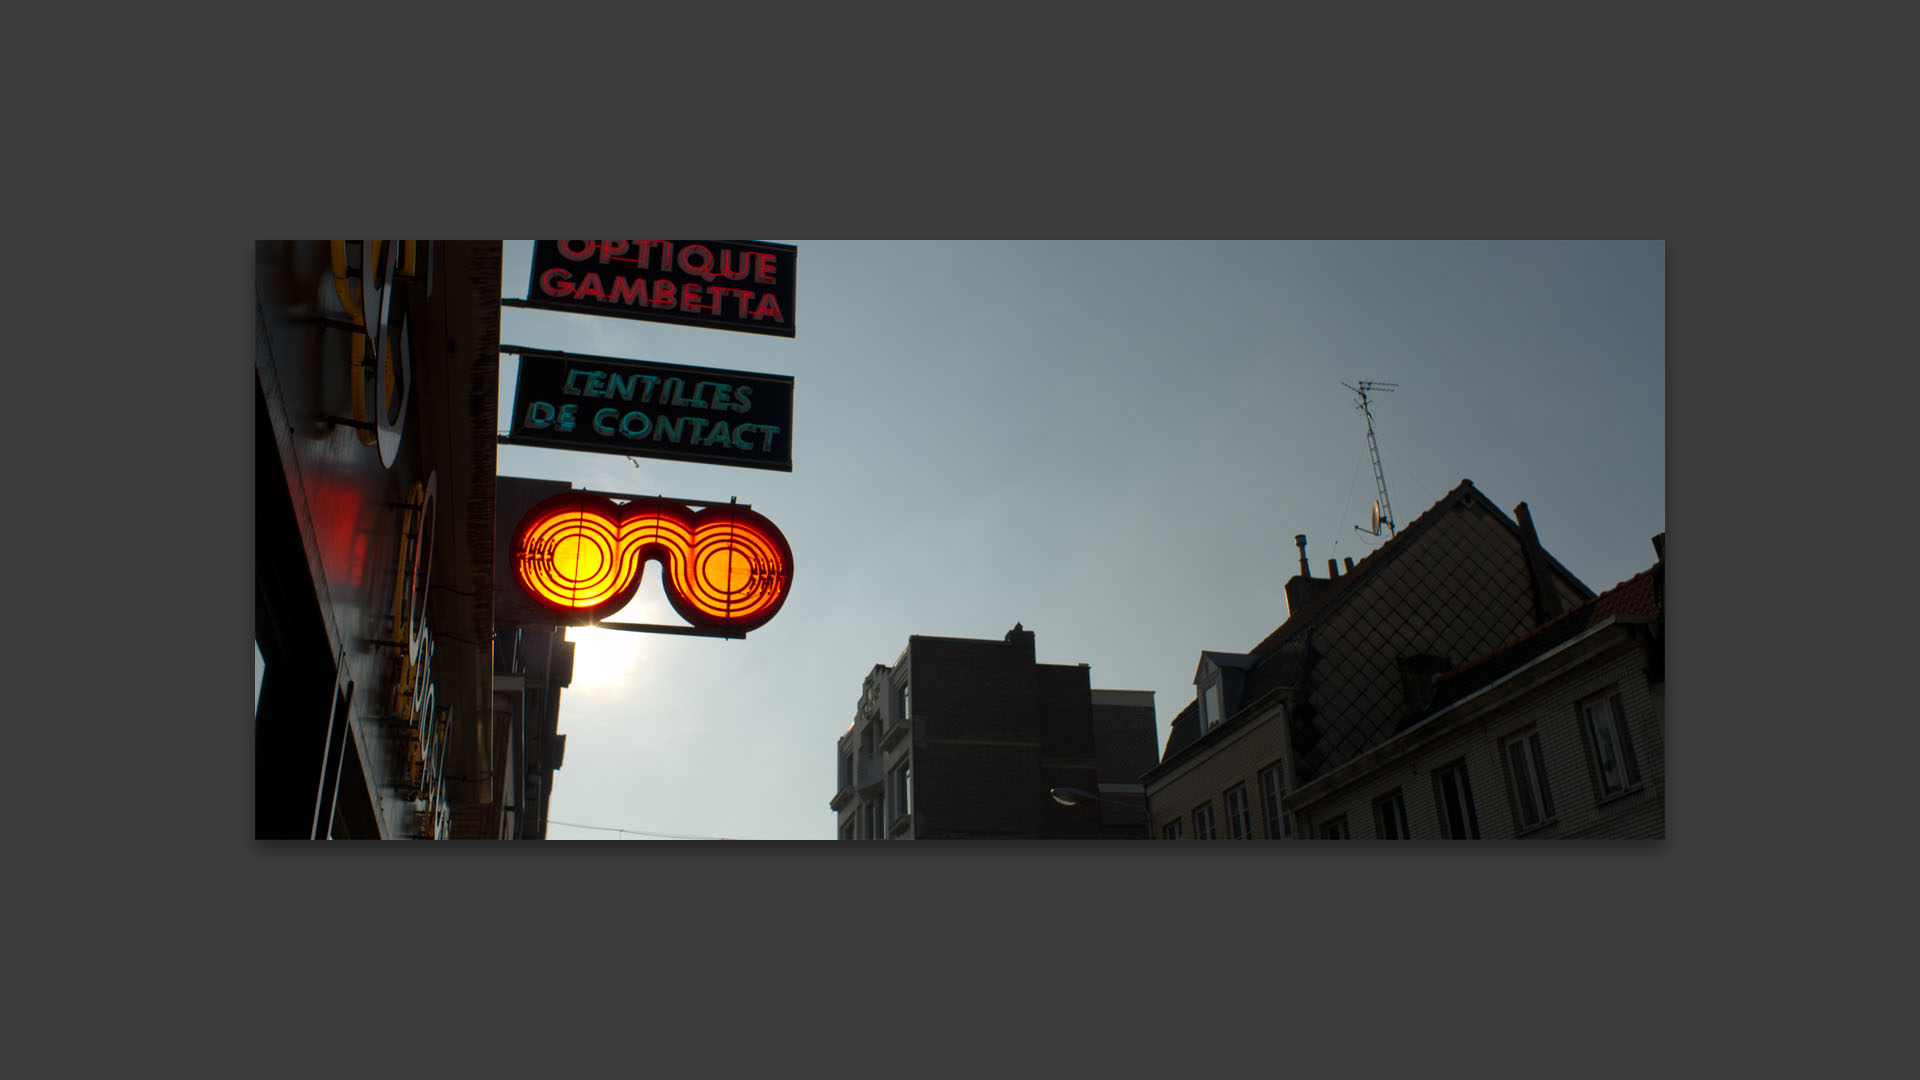 Enseigne d'opticien, rue Gambetta, à Wazemmes, Lille.